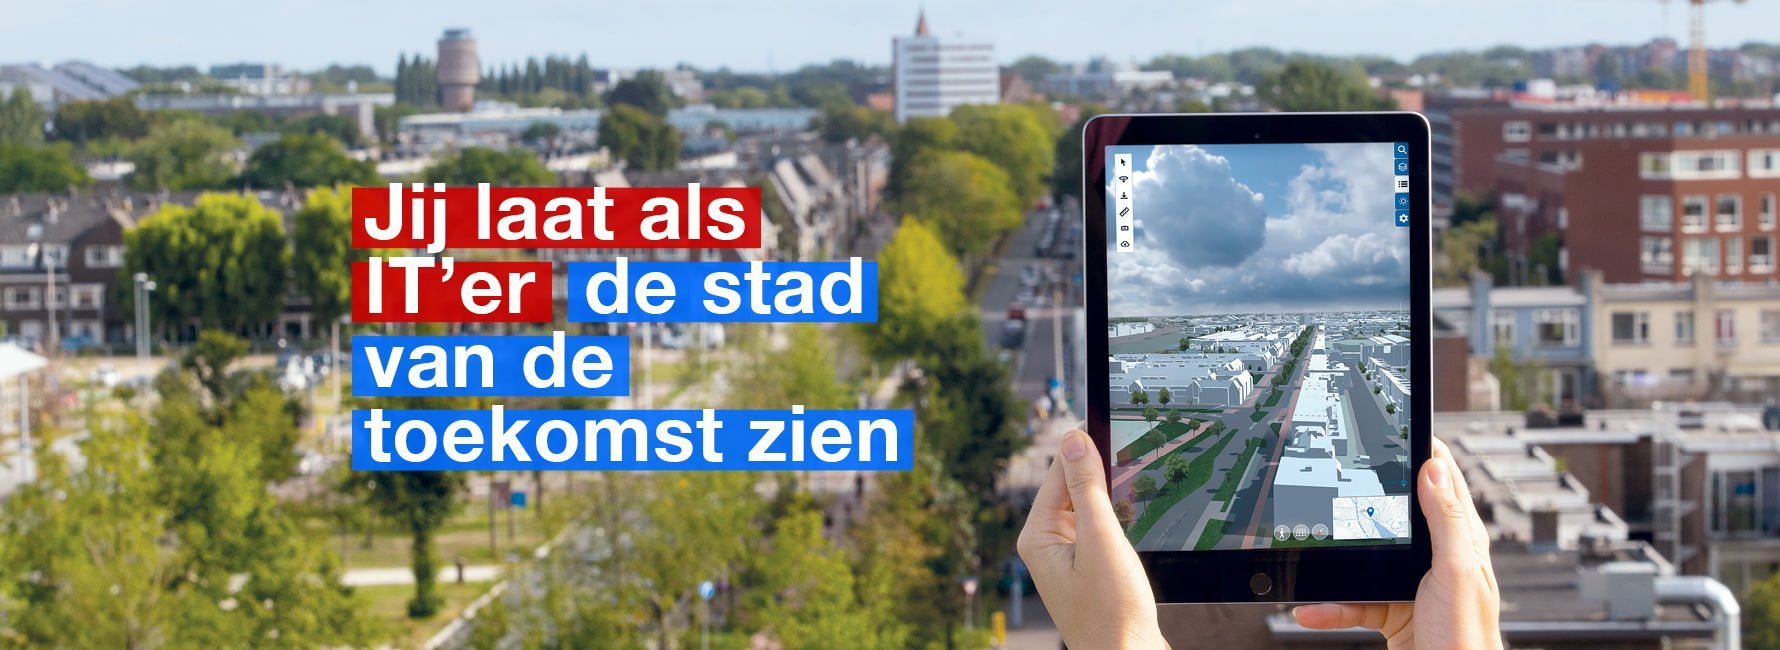 Op tablet is de stad Utrecht in 3D tekening zichtbaar